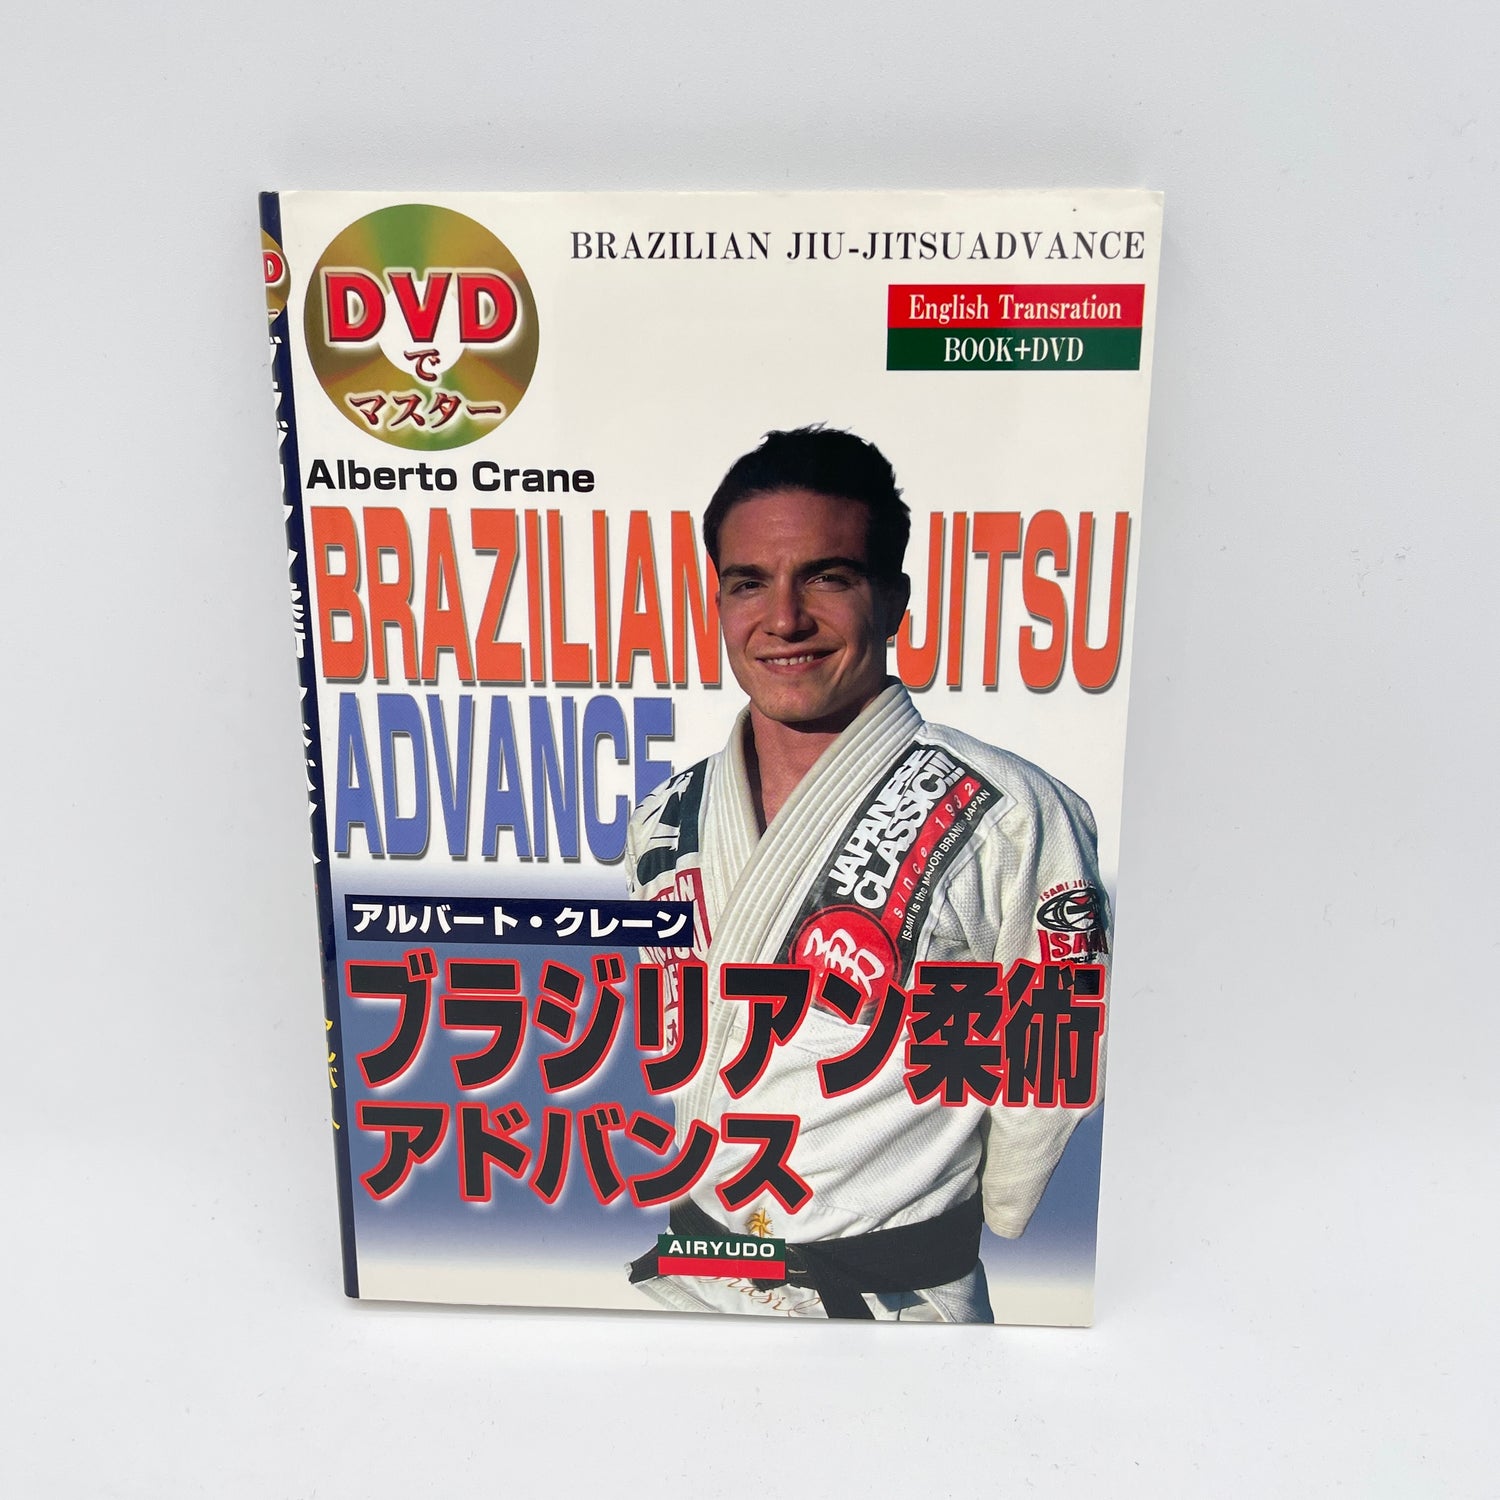 Advanced BJJ Book & DVD by Alberto Crane (Preowned)